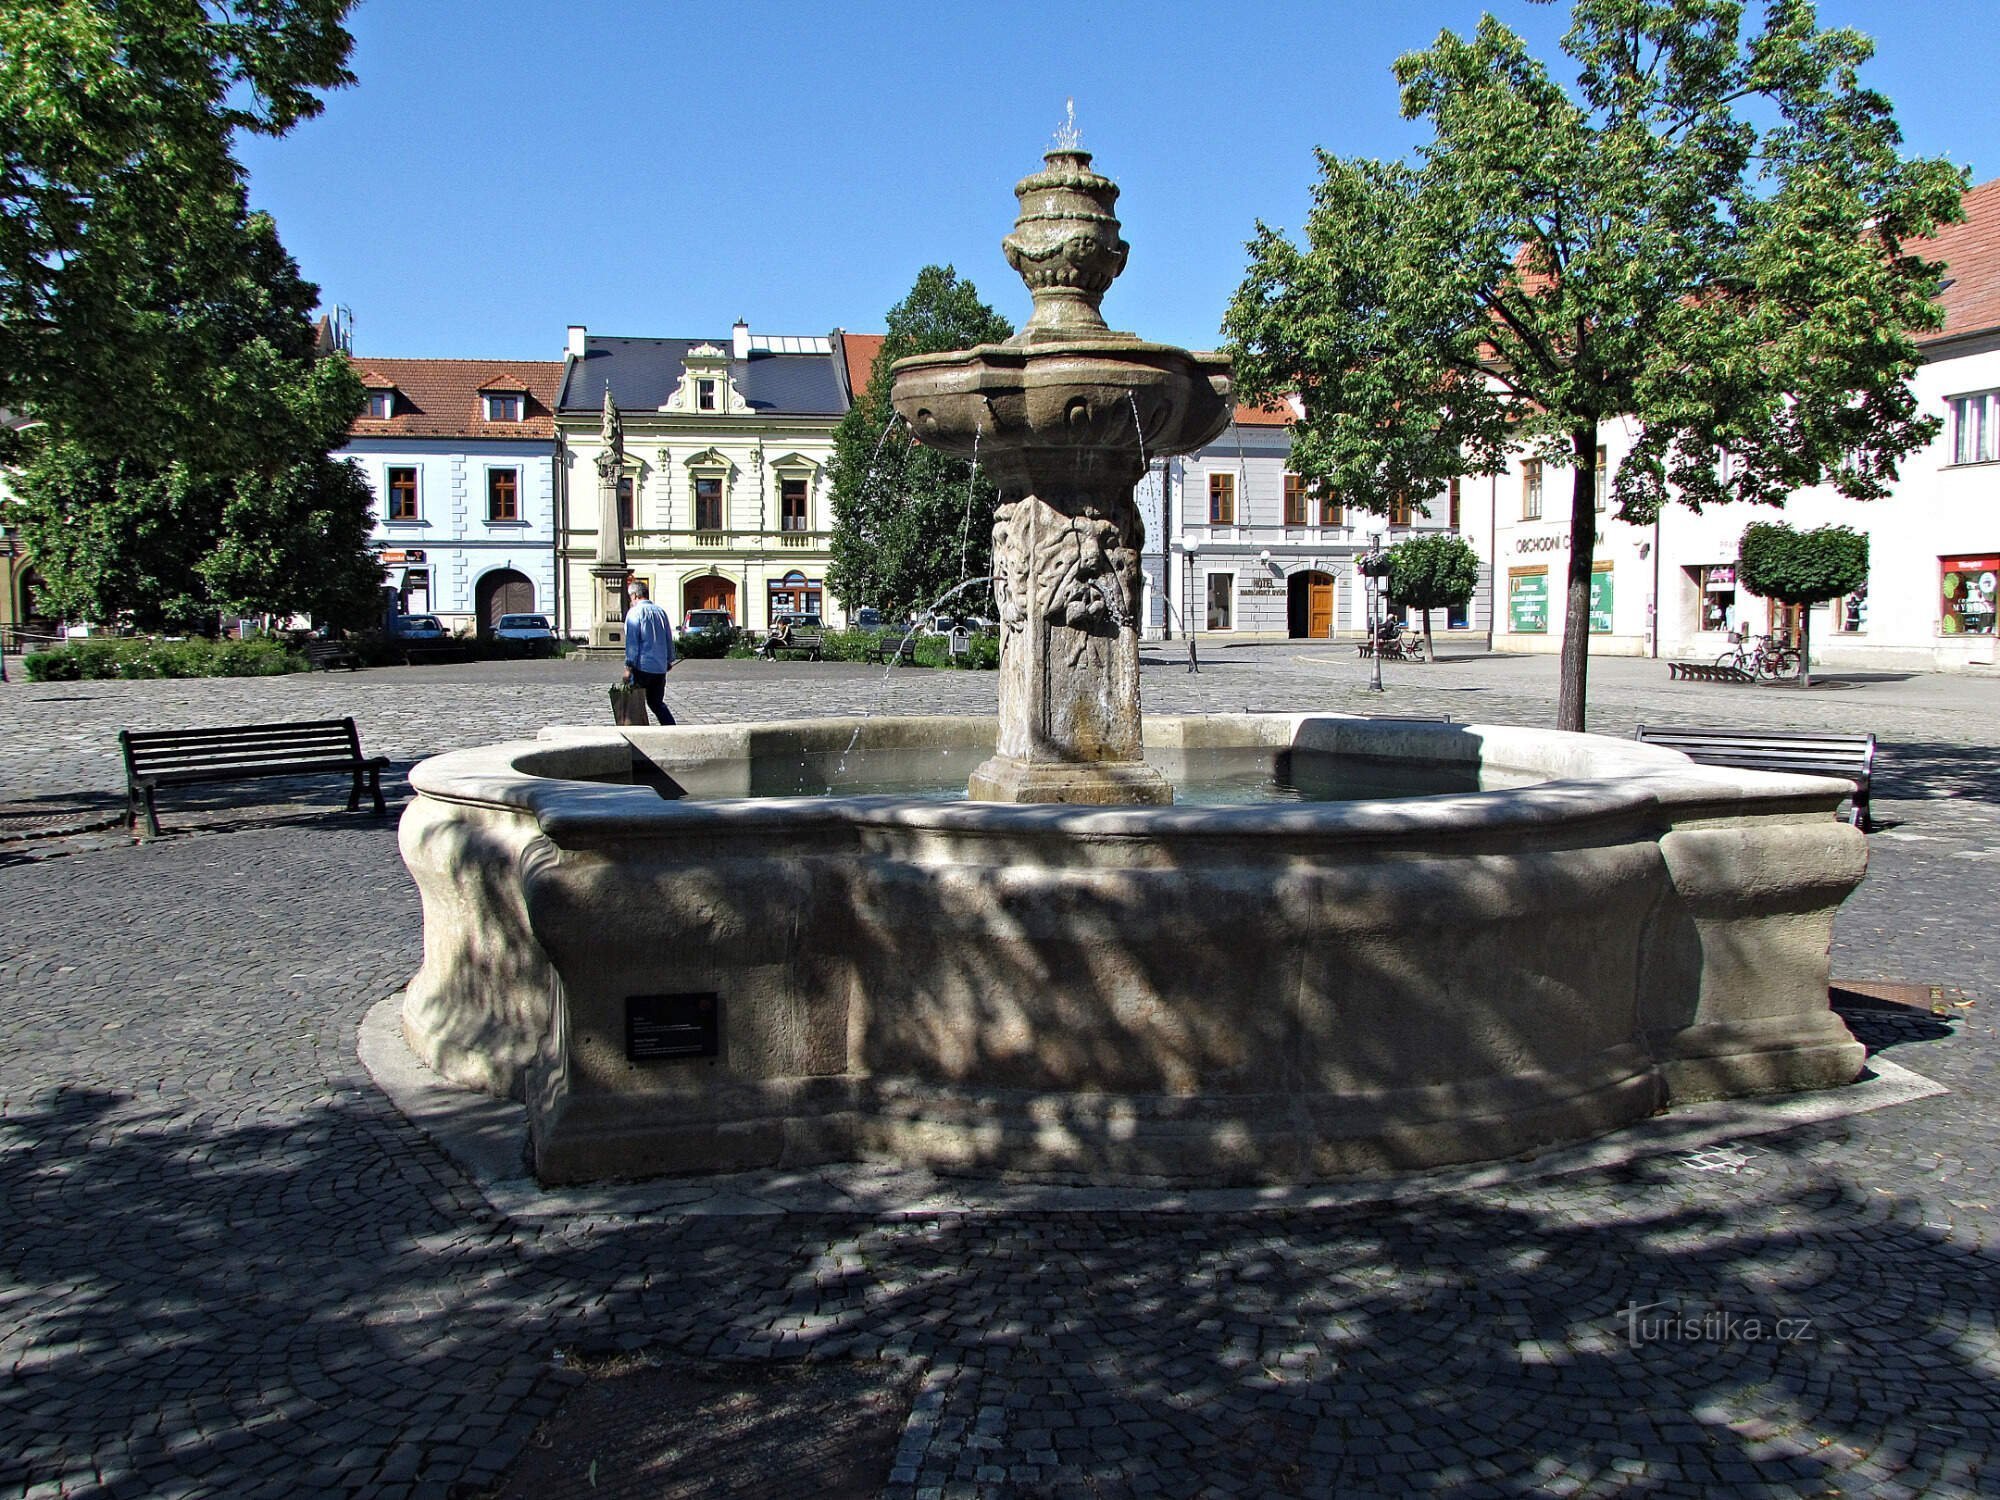 Uherské Hradiště - Brunnen auf dem Mariánské náměstí